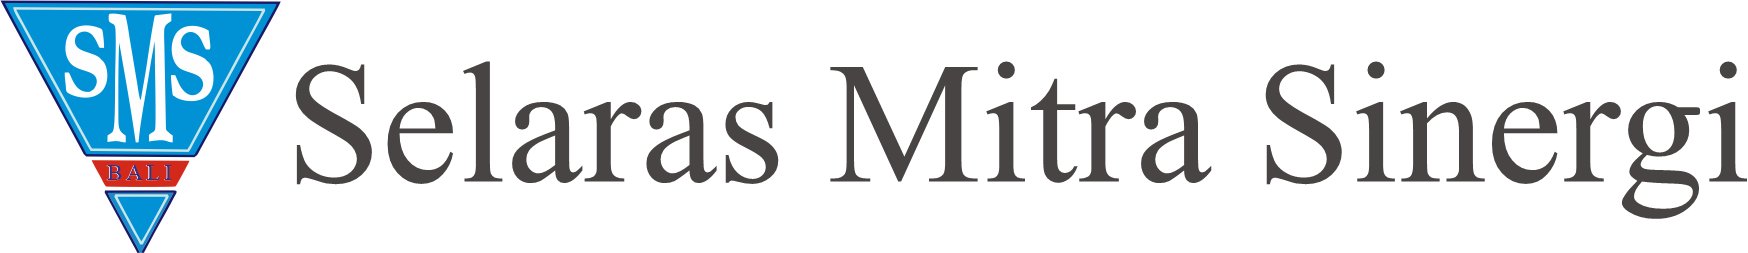 SelarasMitraSinergi||Logo